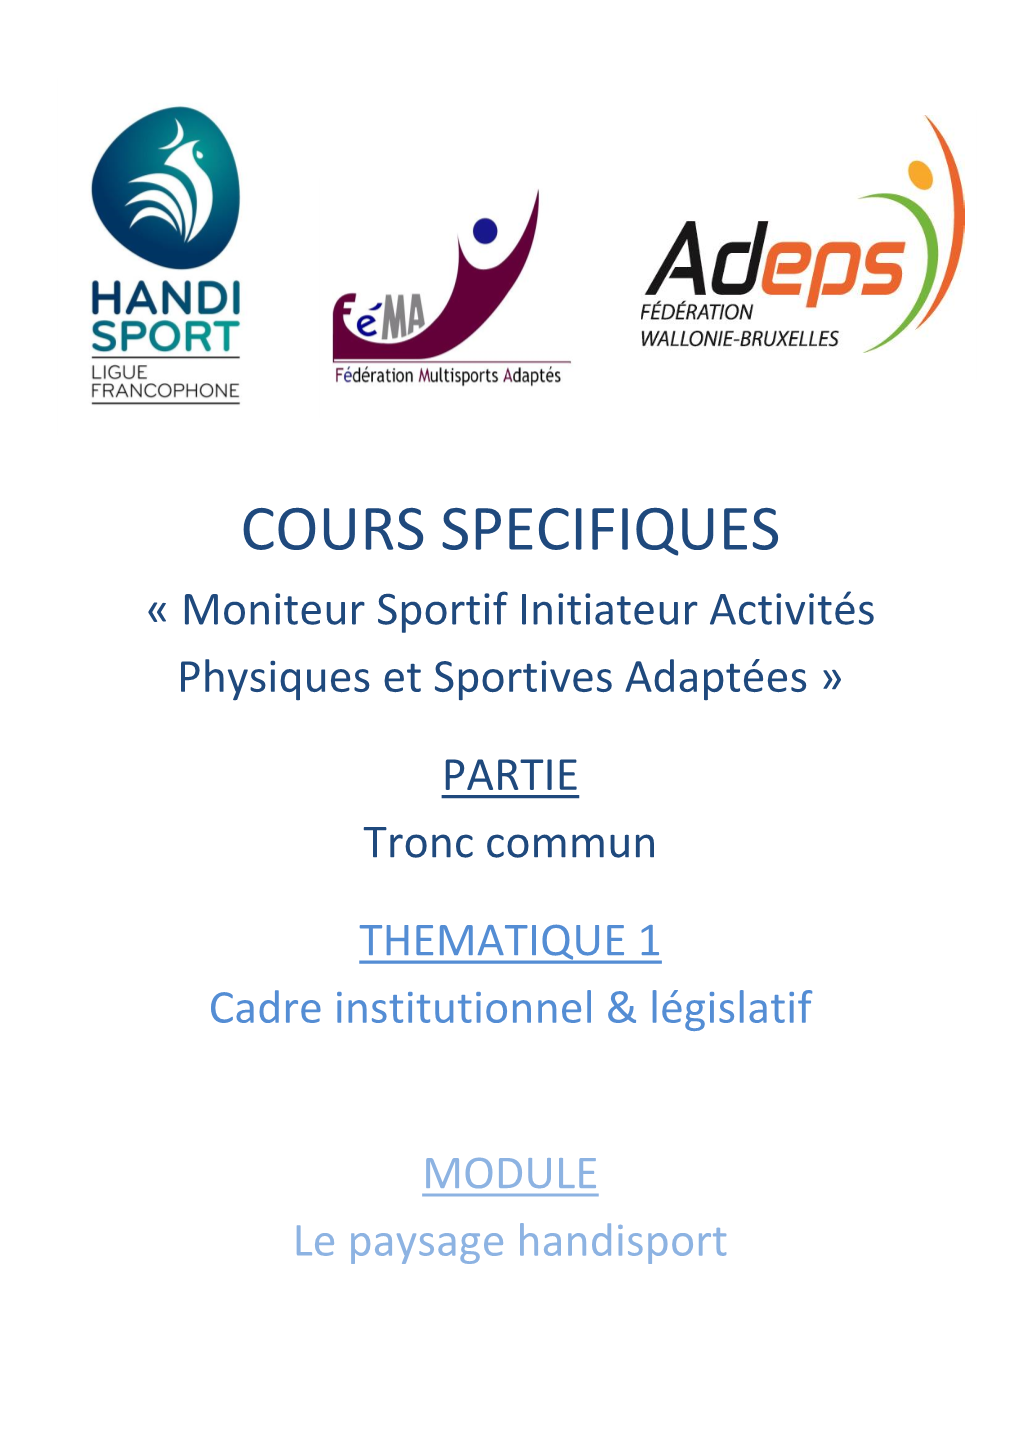 COURS SPECIFIQUES « Moniteur Sportif Initiateur Activités Physiques Et Sportives Adaptées »